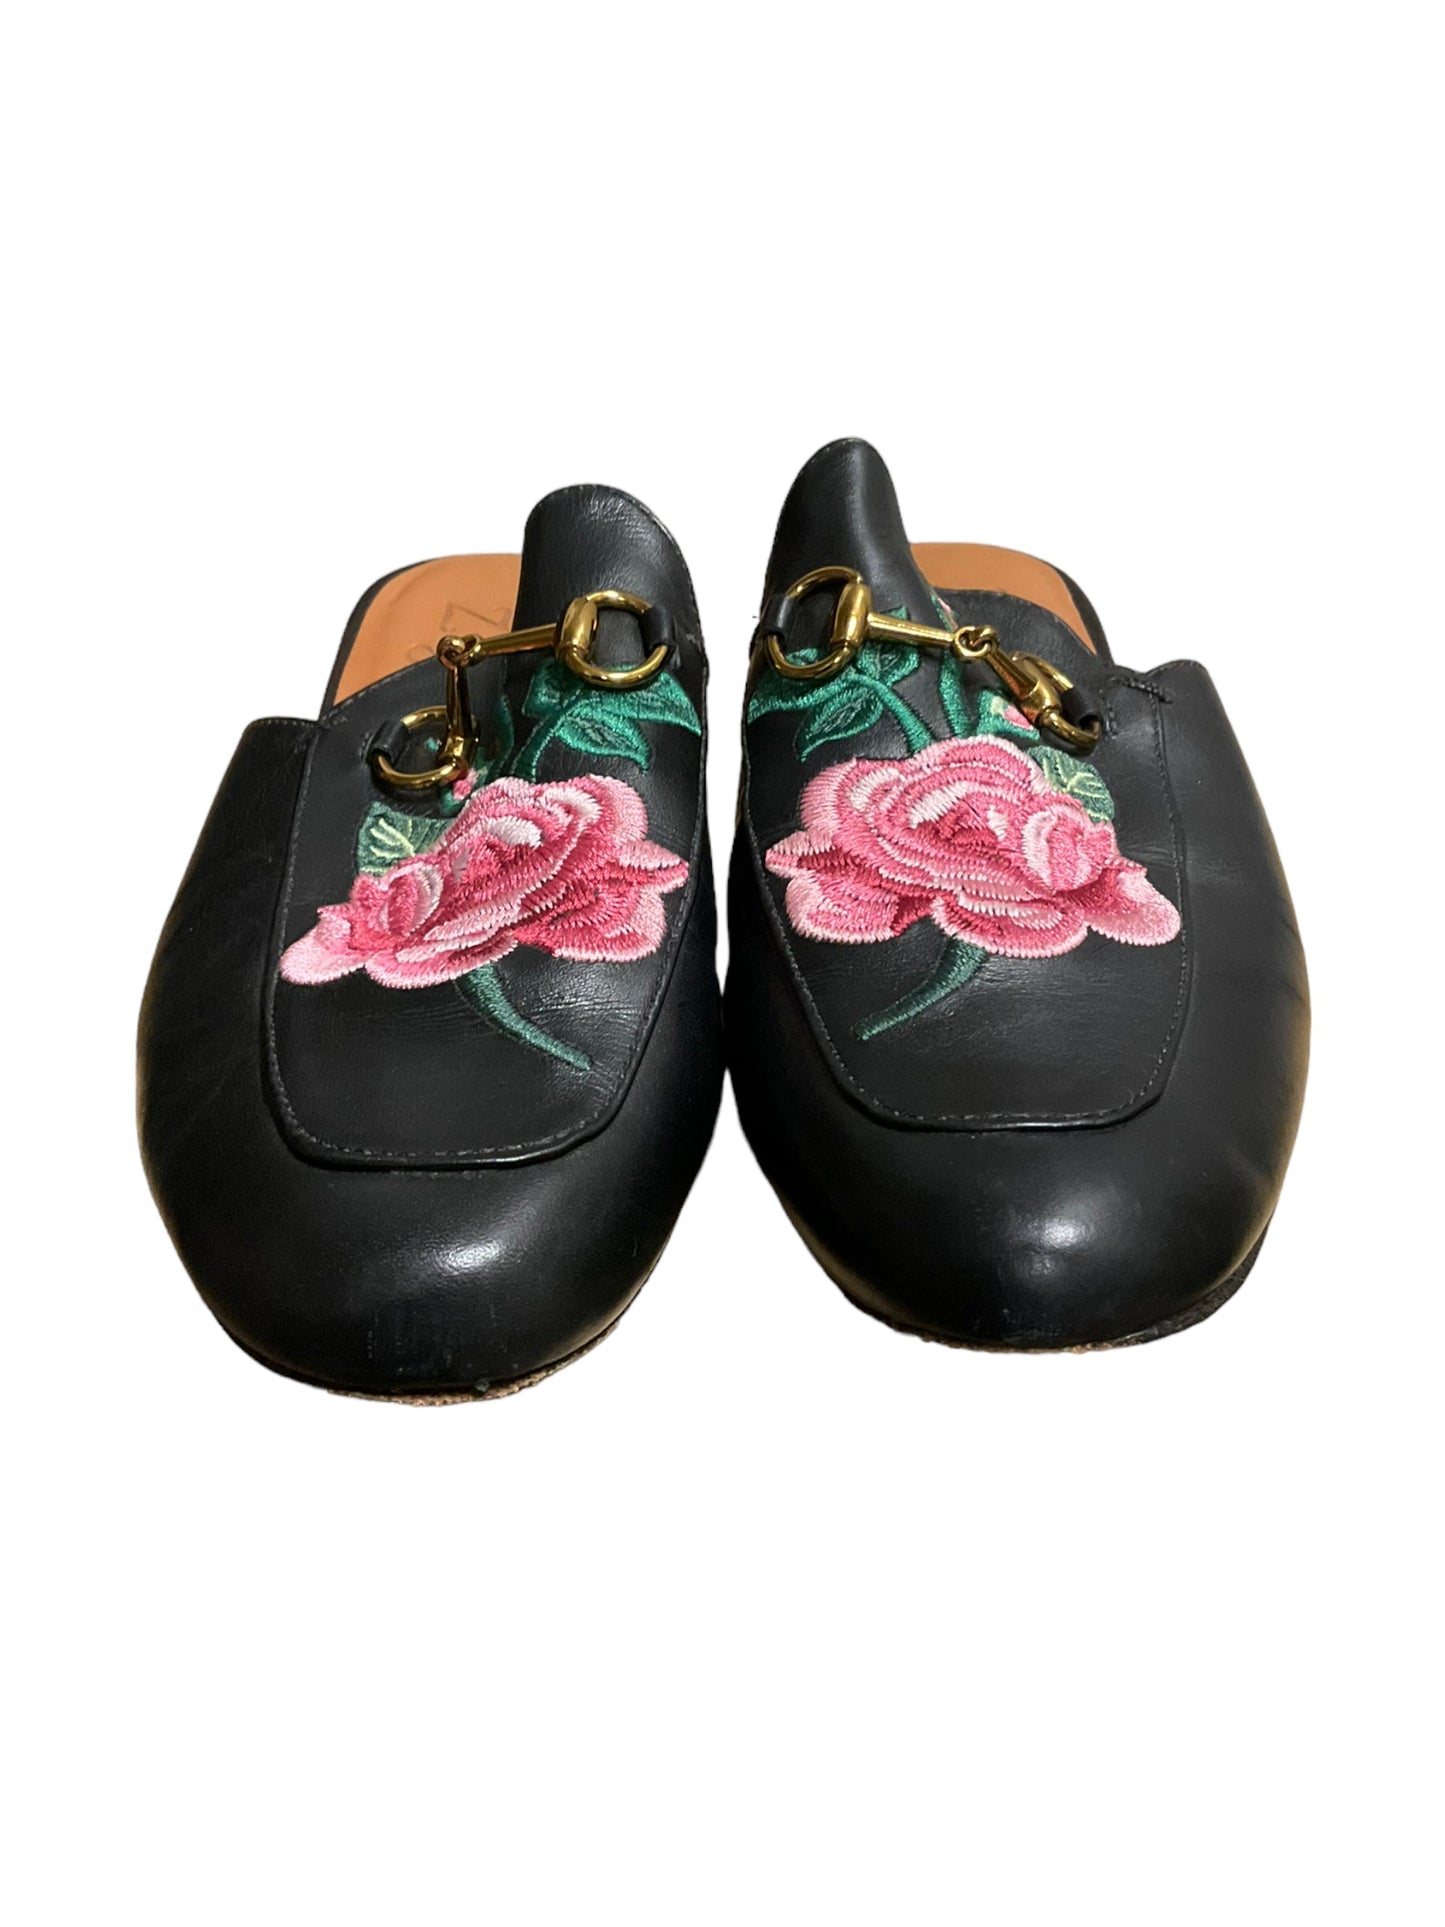 Shoes Flats By ZIGI   Size: 8.5